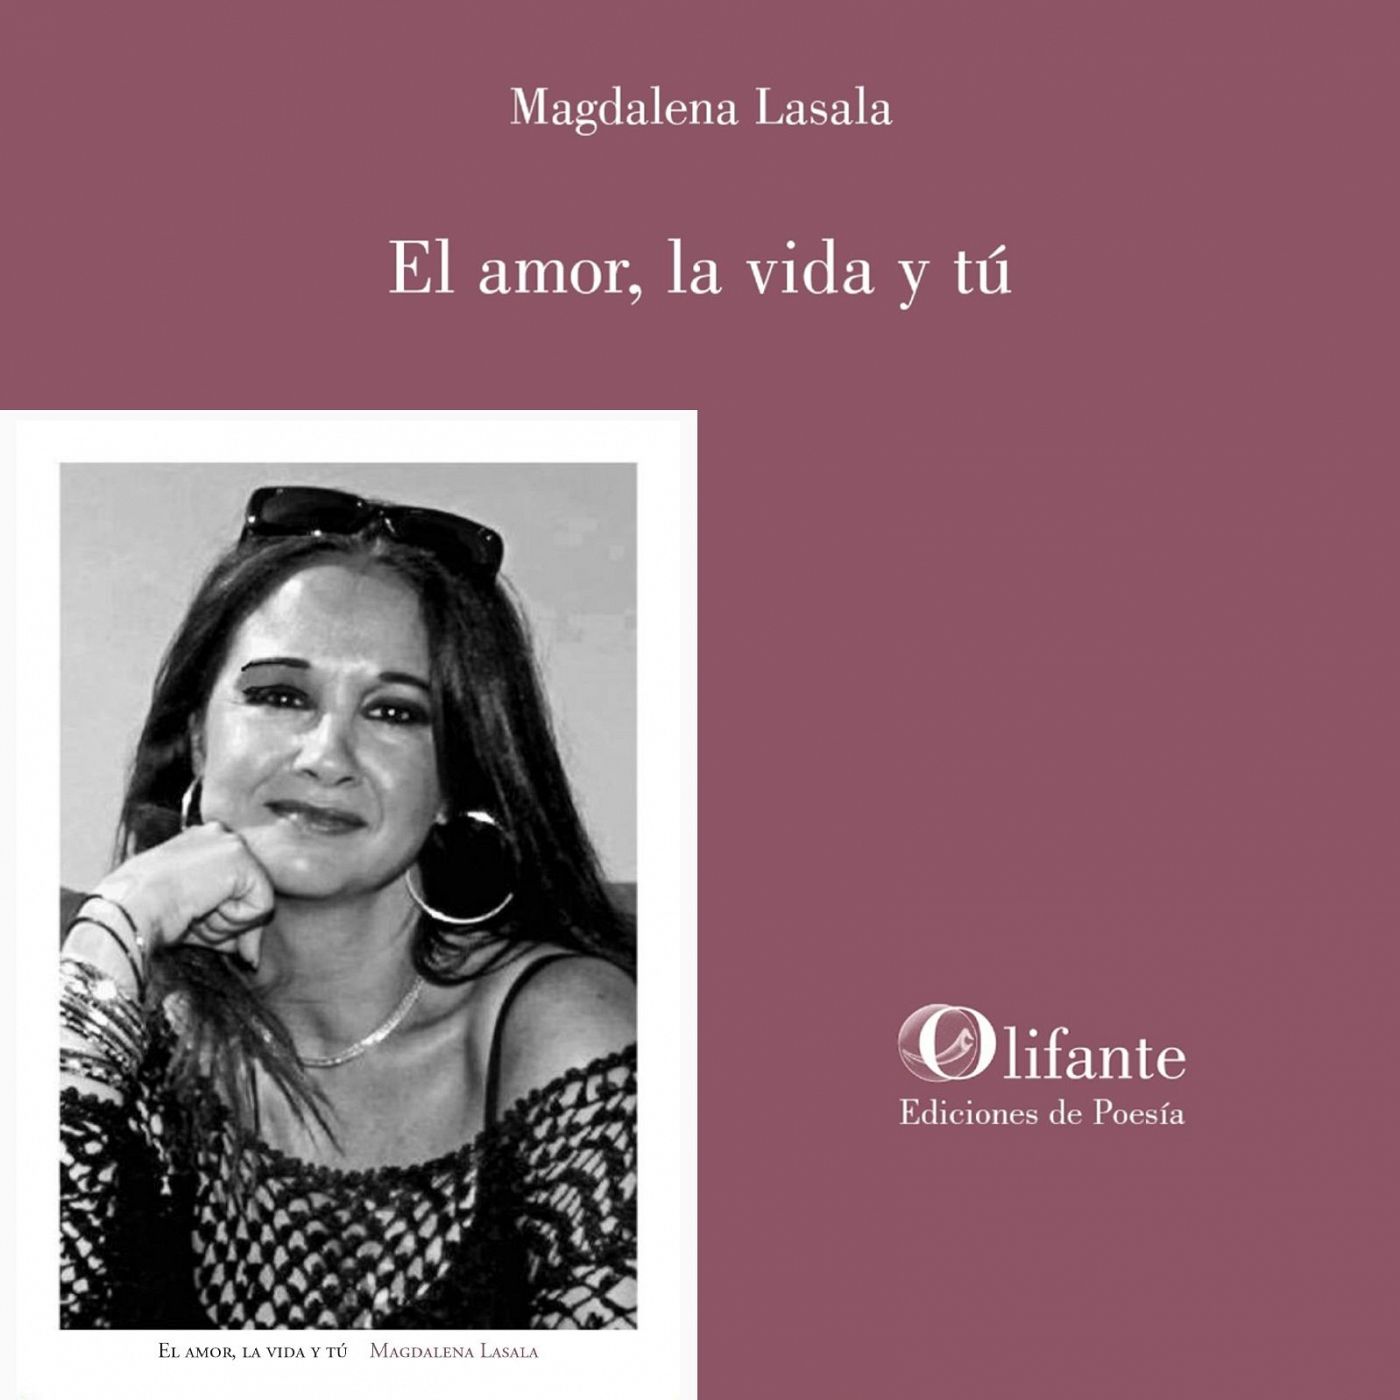 Metaverso - El amor, la vida y t� (Magdalena Lasala, Ed. Olifante) - 25/03/2024